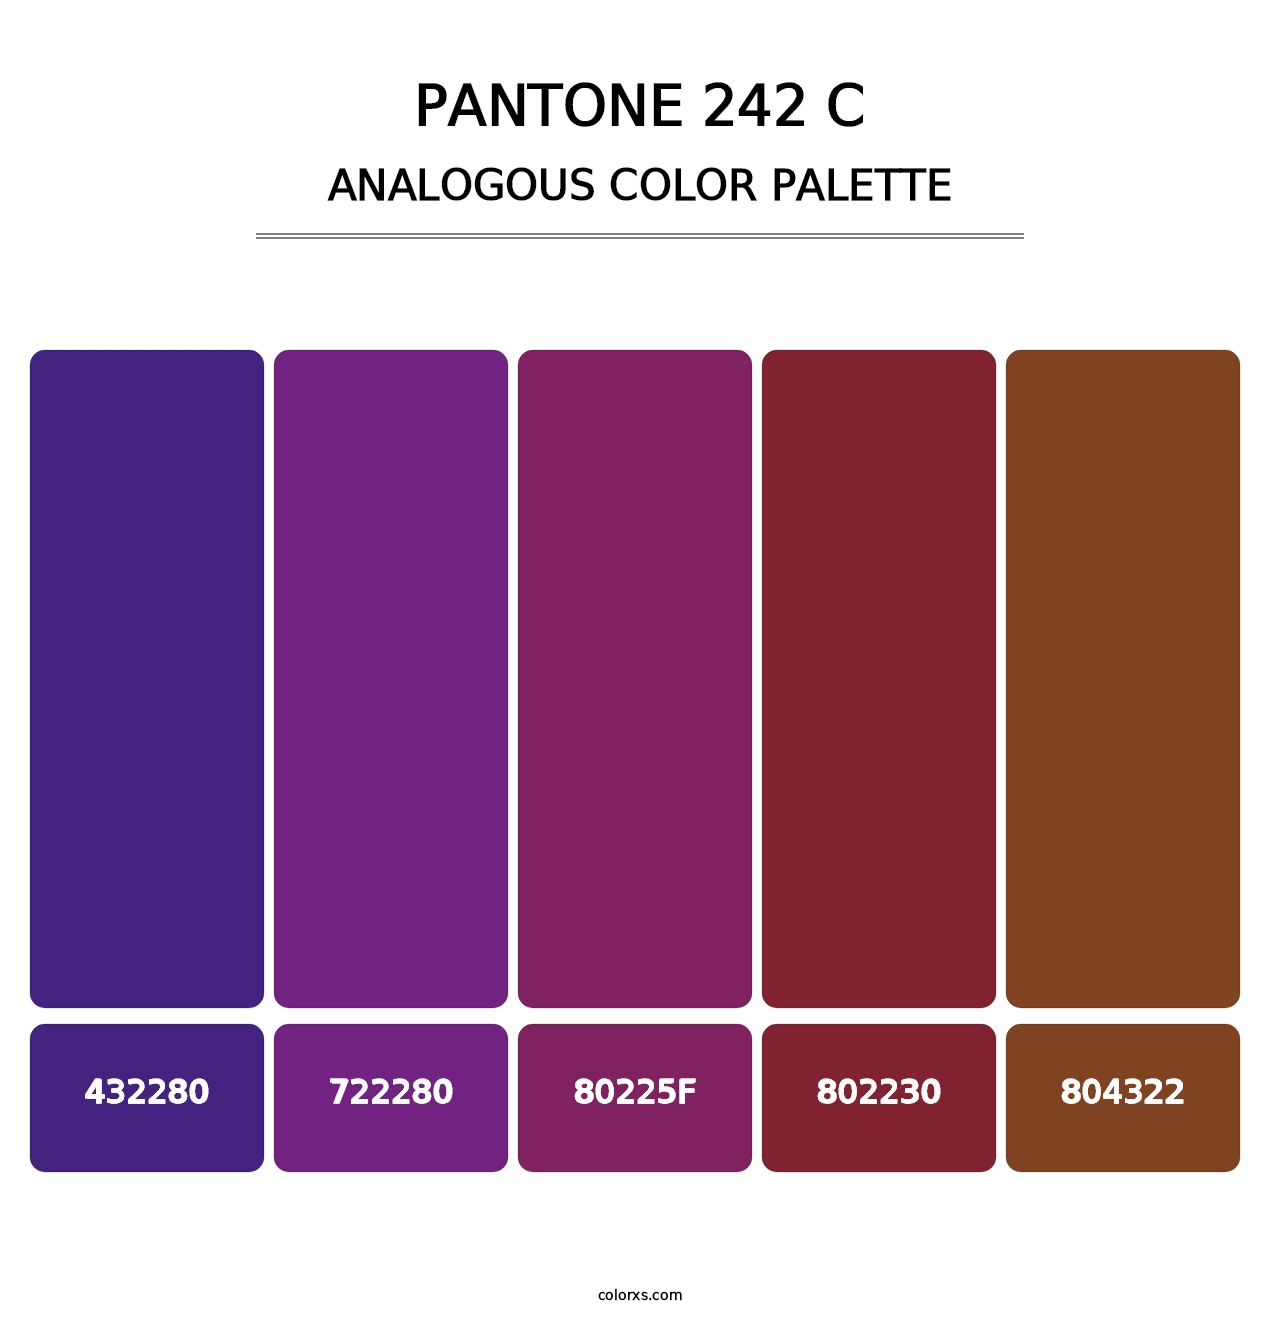 PANTONE 242 C - Analogous Color Palette